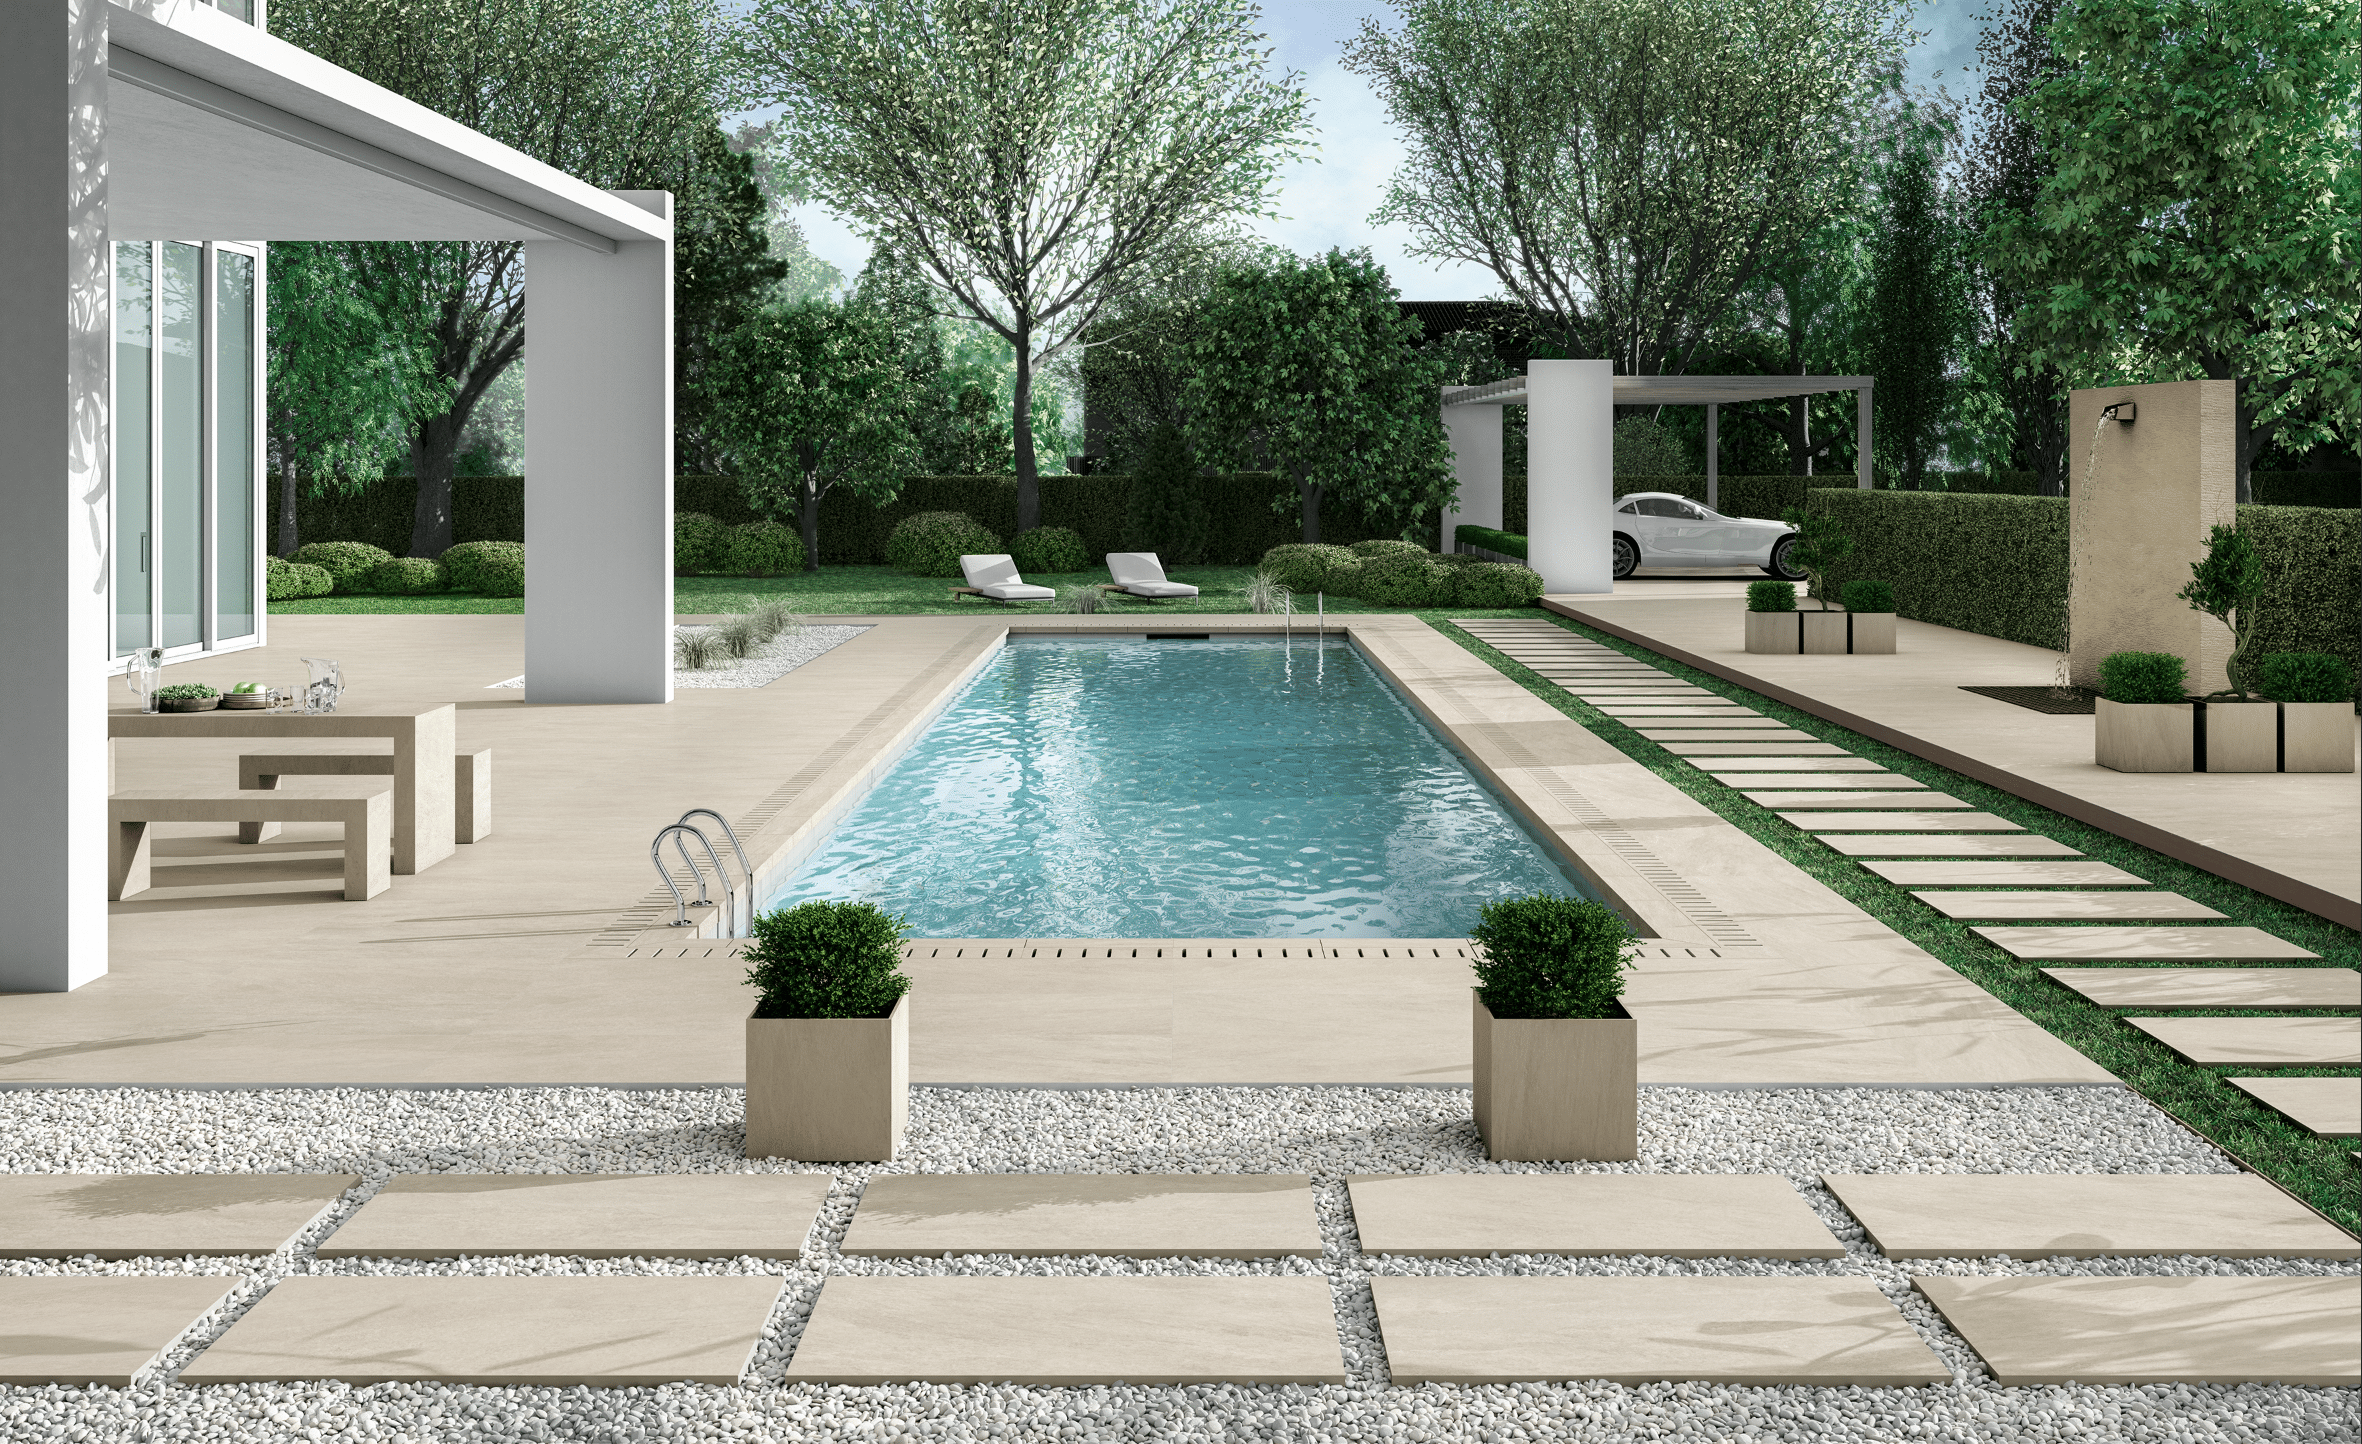 Großzügige Terrasse mit Gartenbereich ausgestattet mit hellen Fliesen von Fliesendorf, Kieselsteinen, Pool, Wasserfall, gefliester Sitzgelegenheit und Carport.